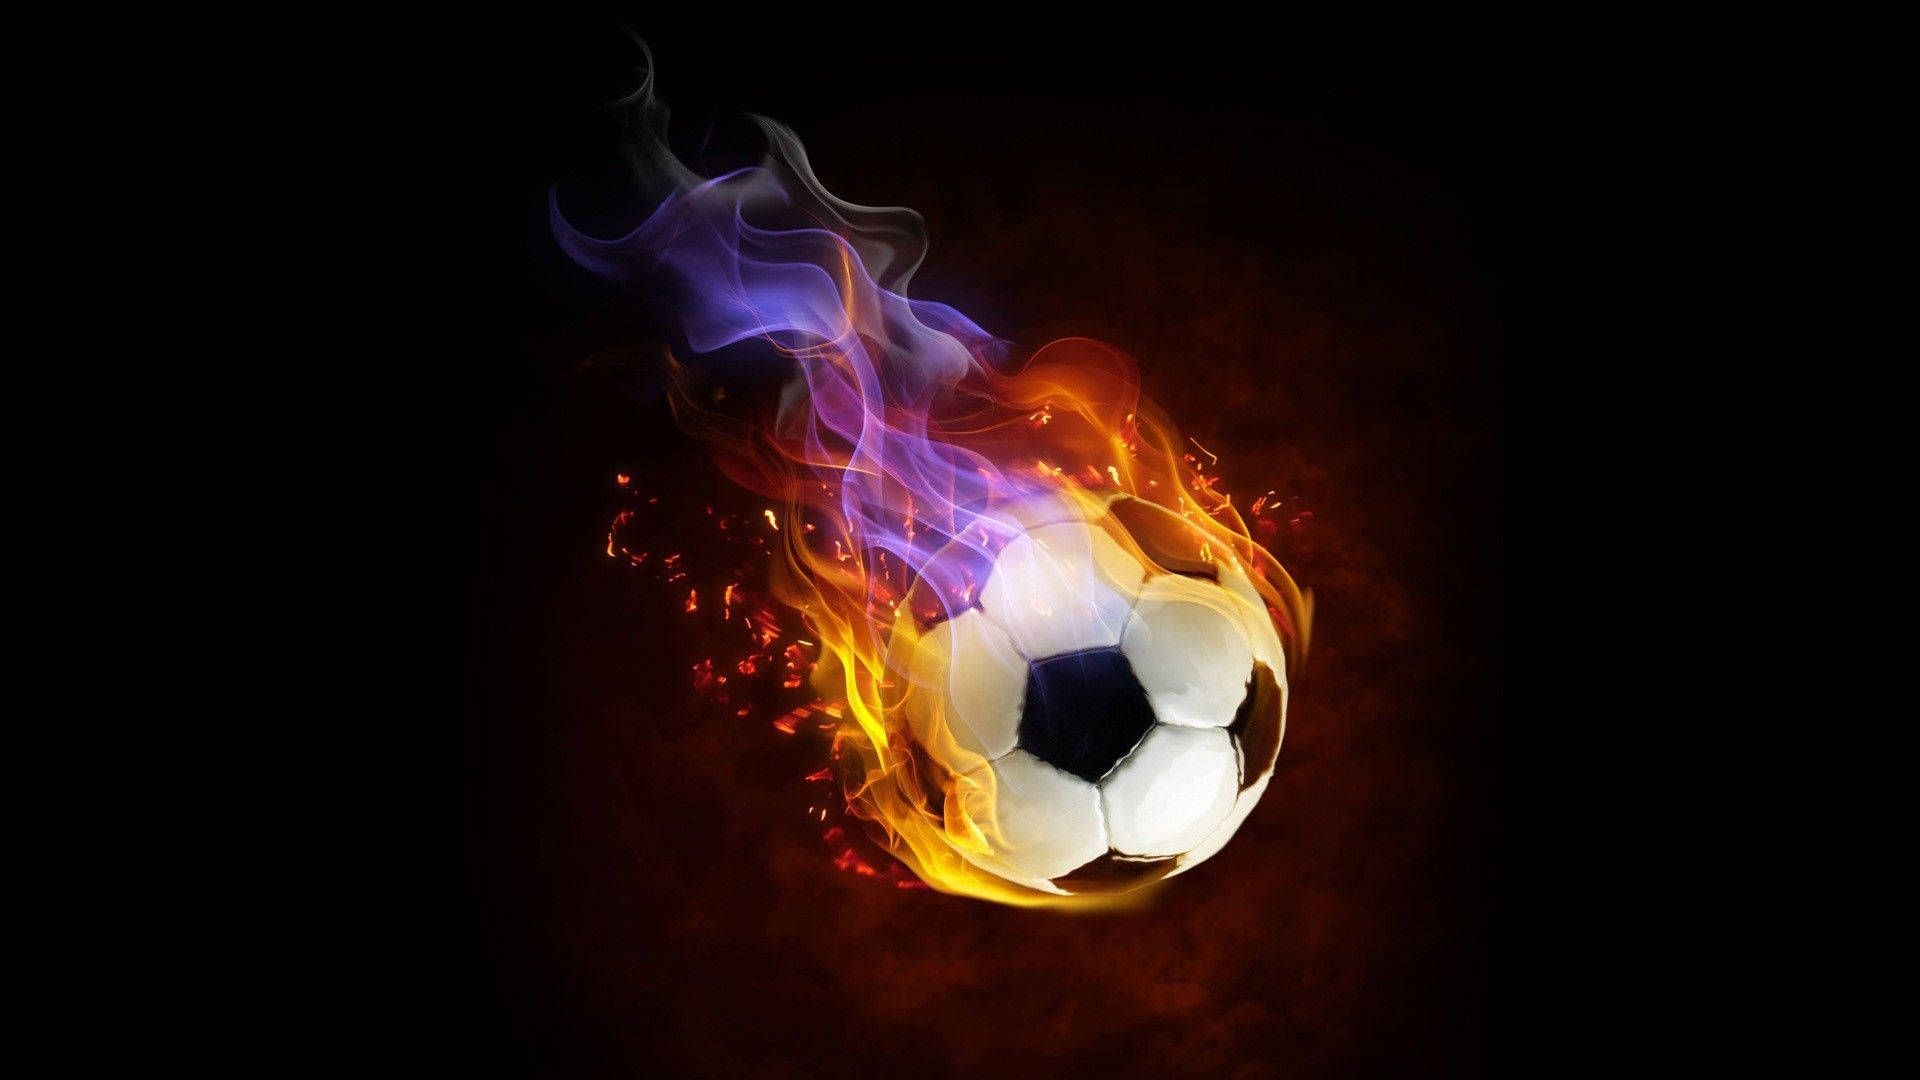 Soccer ball on fire, wallpaper background, 1920x1080 all for desktop - Soccer